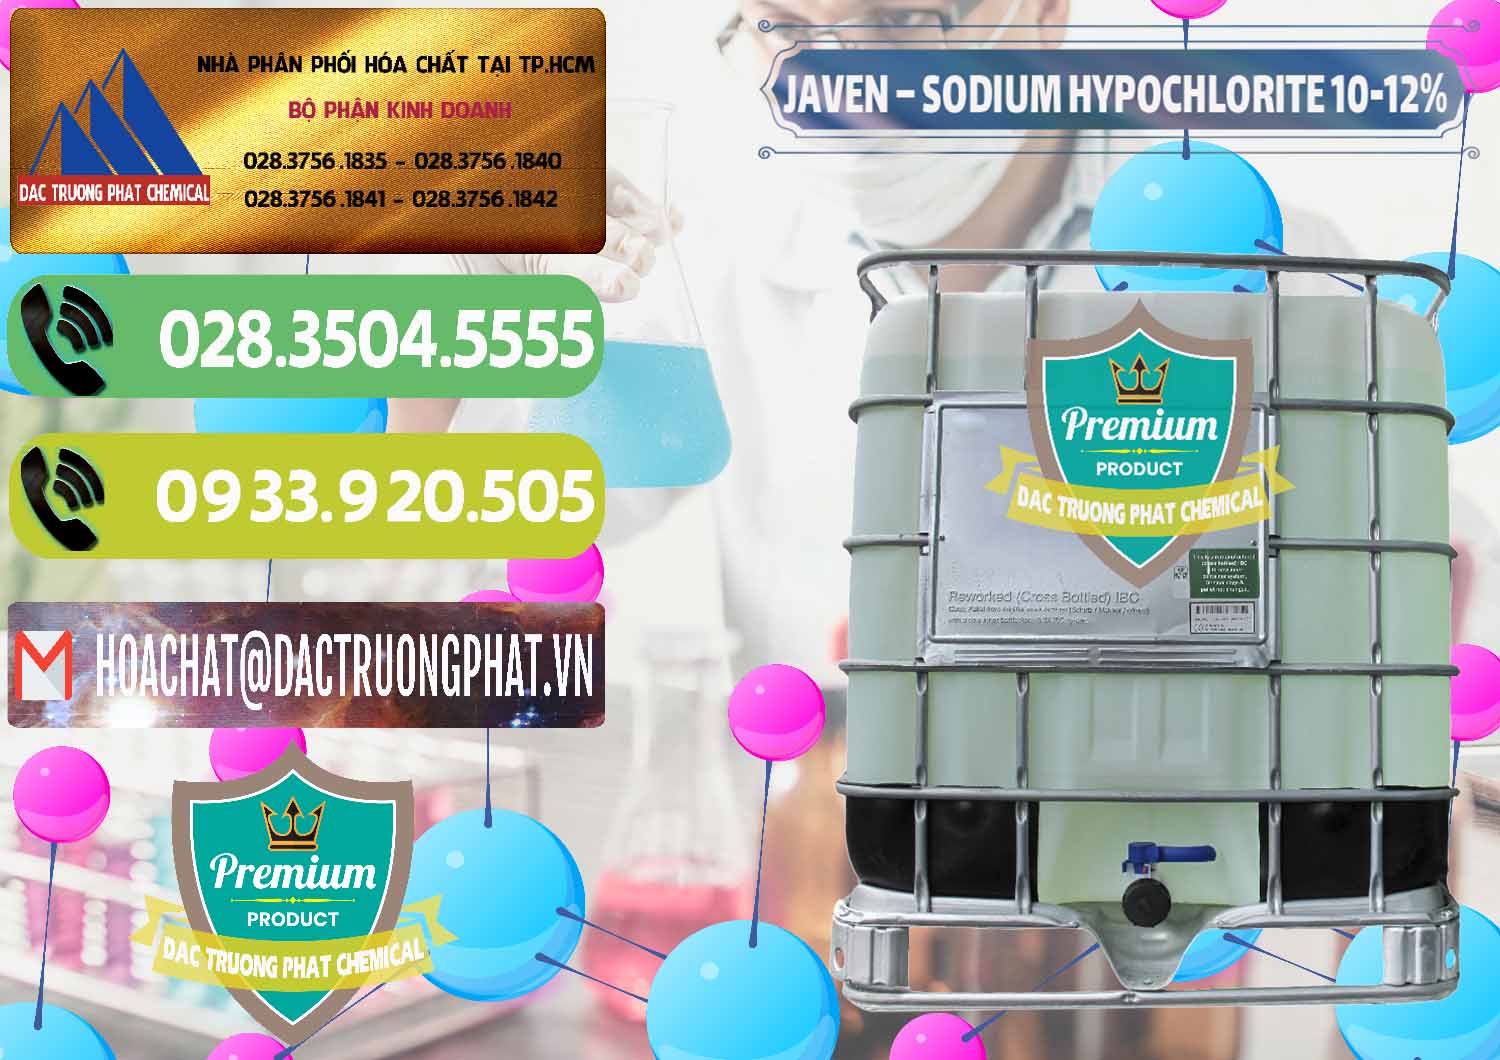 Cty bán & phân phối Javen - Sodium Hypochlorite 10-12% Việt Nam - 0188 - Bán _ cung ứng hóa chất tại TP.HCM - hoachatmientay.vn